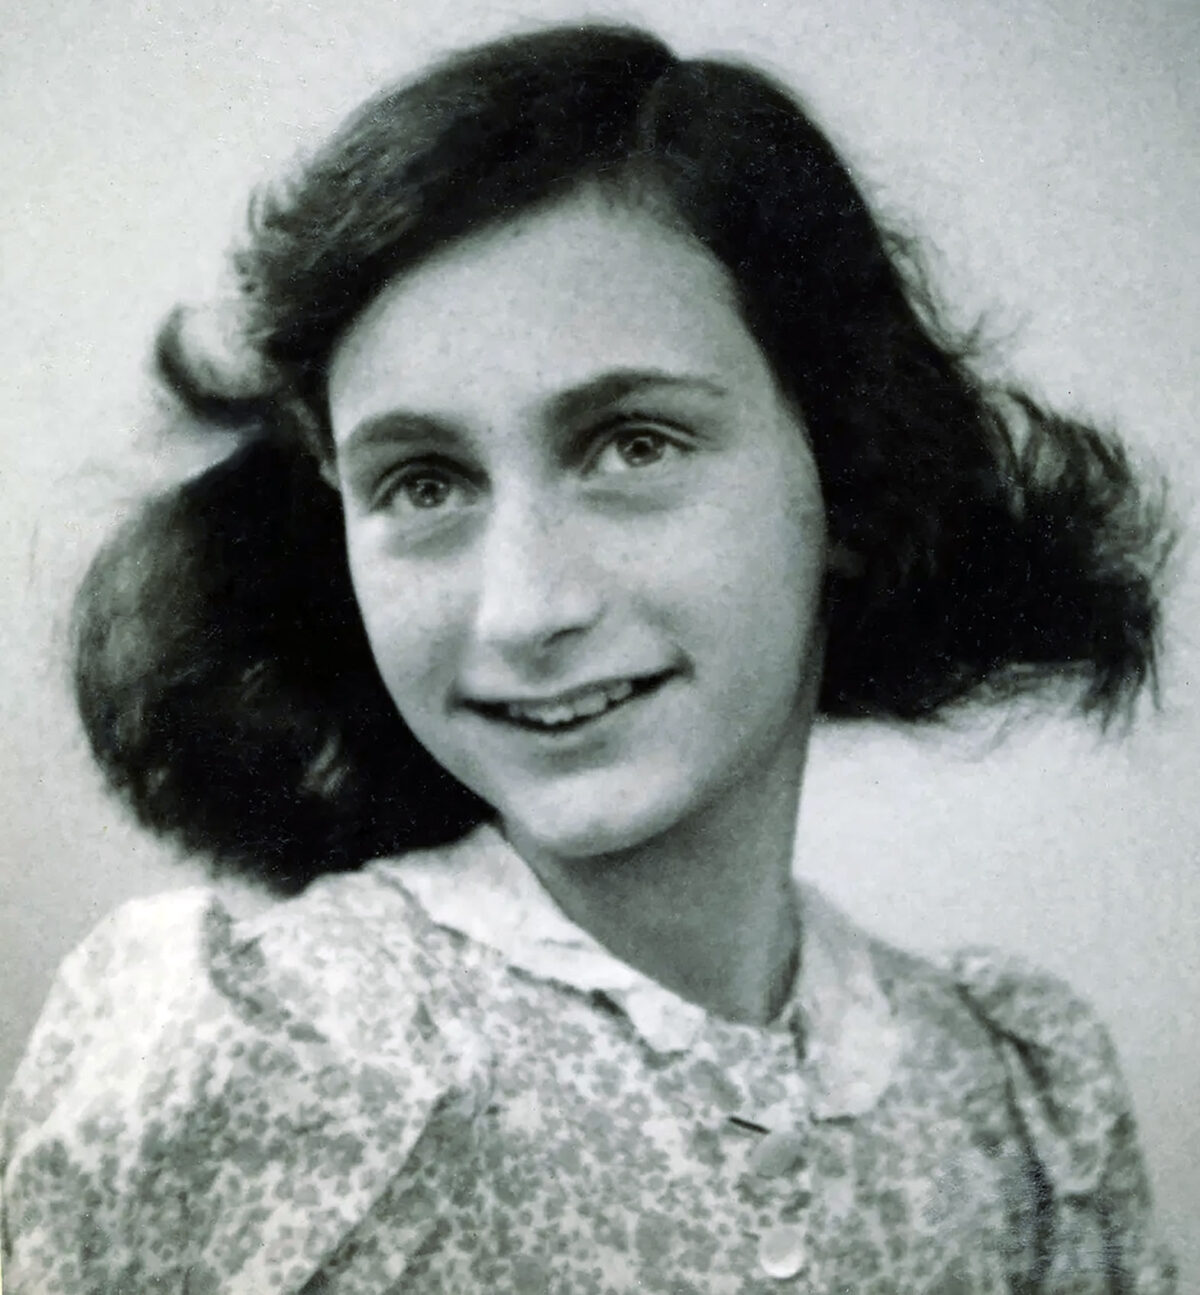 anne-frank-passport-photo-1942